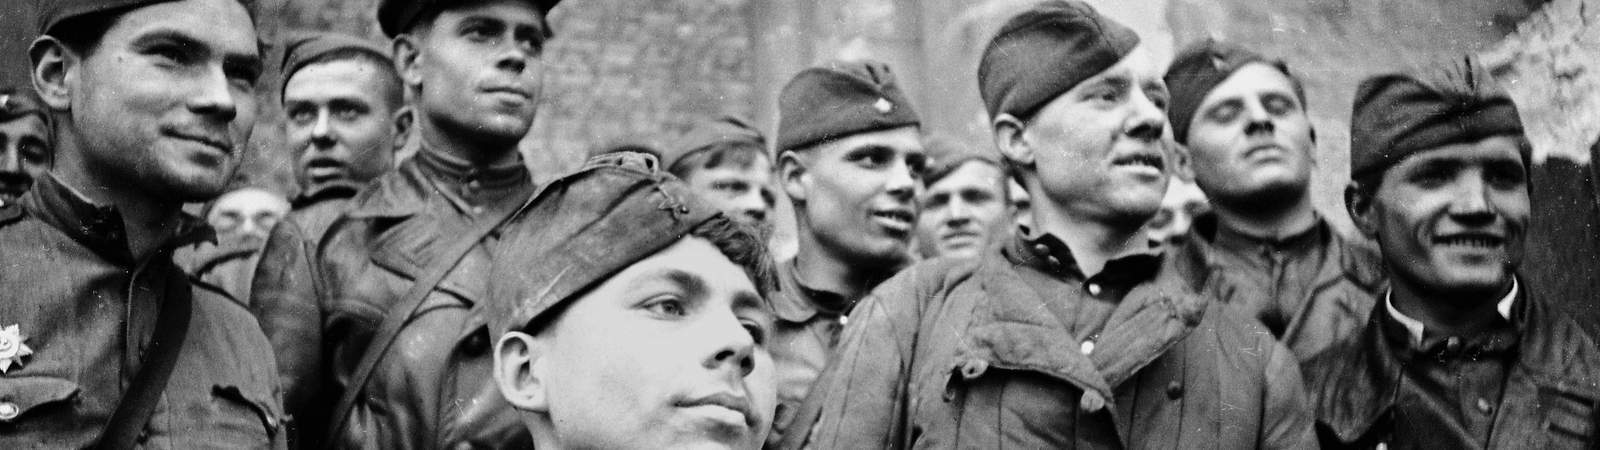 Солдаты 1945